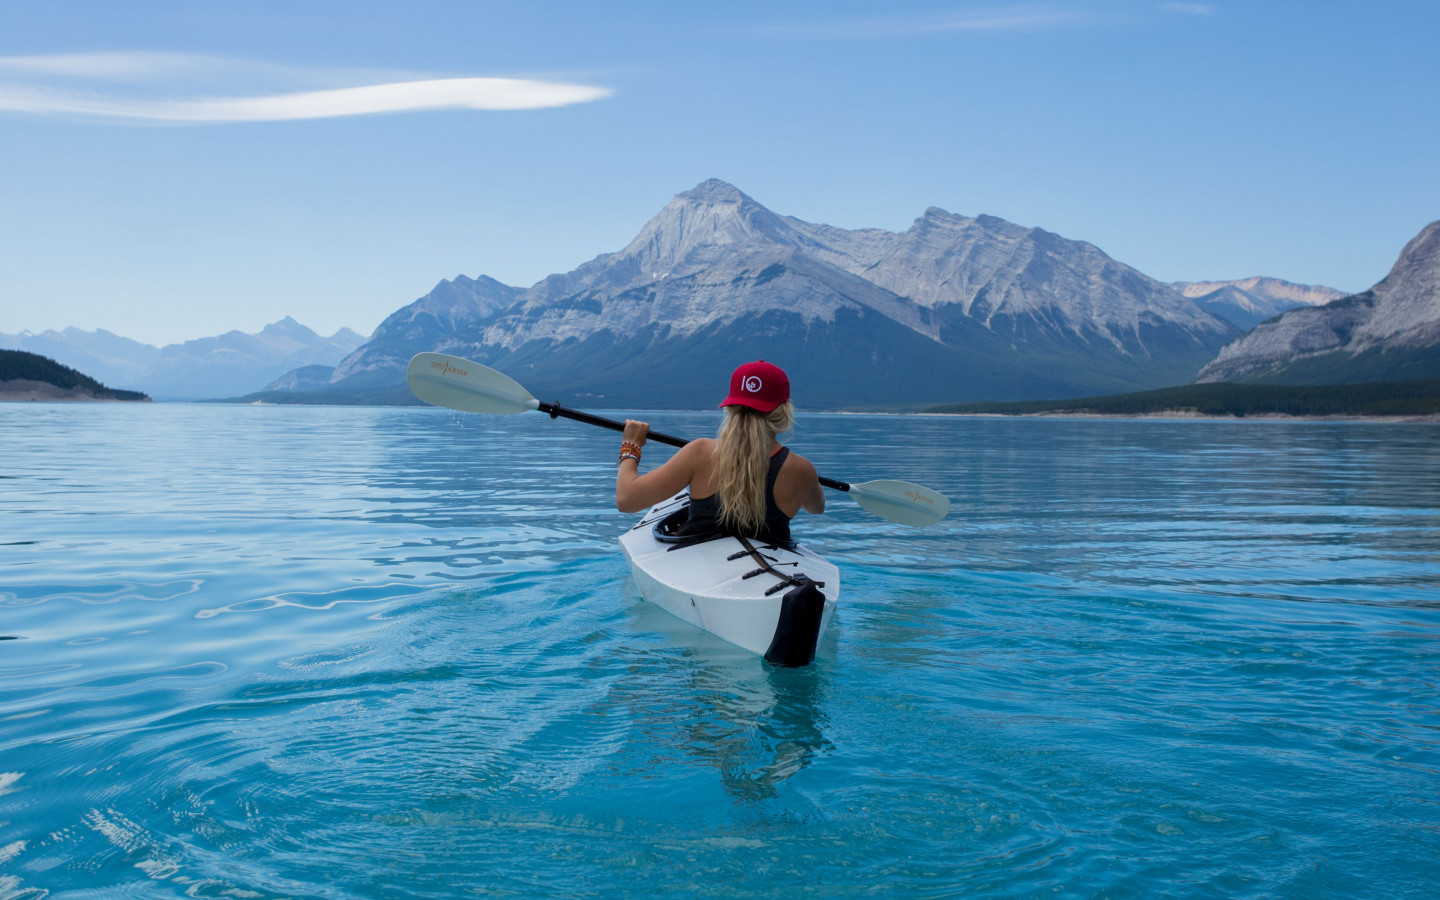 Trip with kayak on lake wallpaper 1440x900